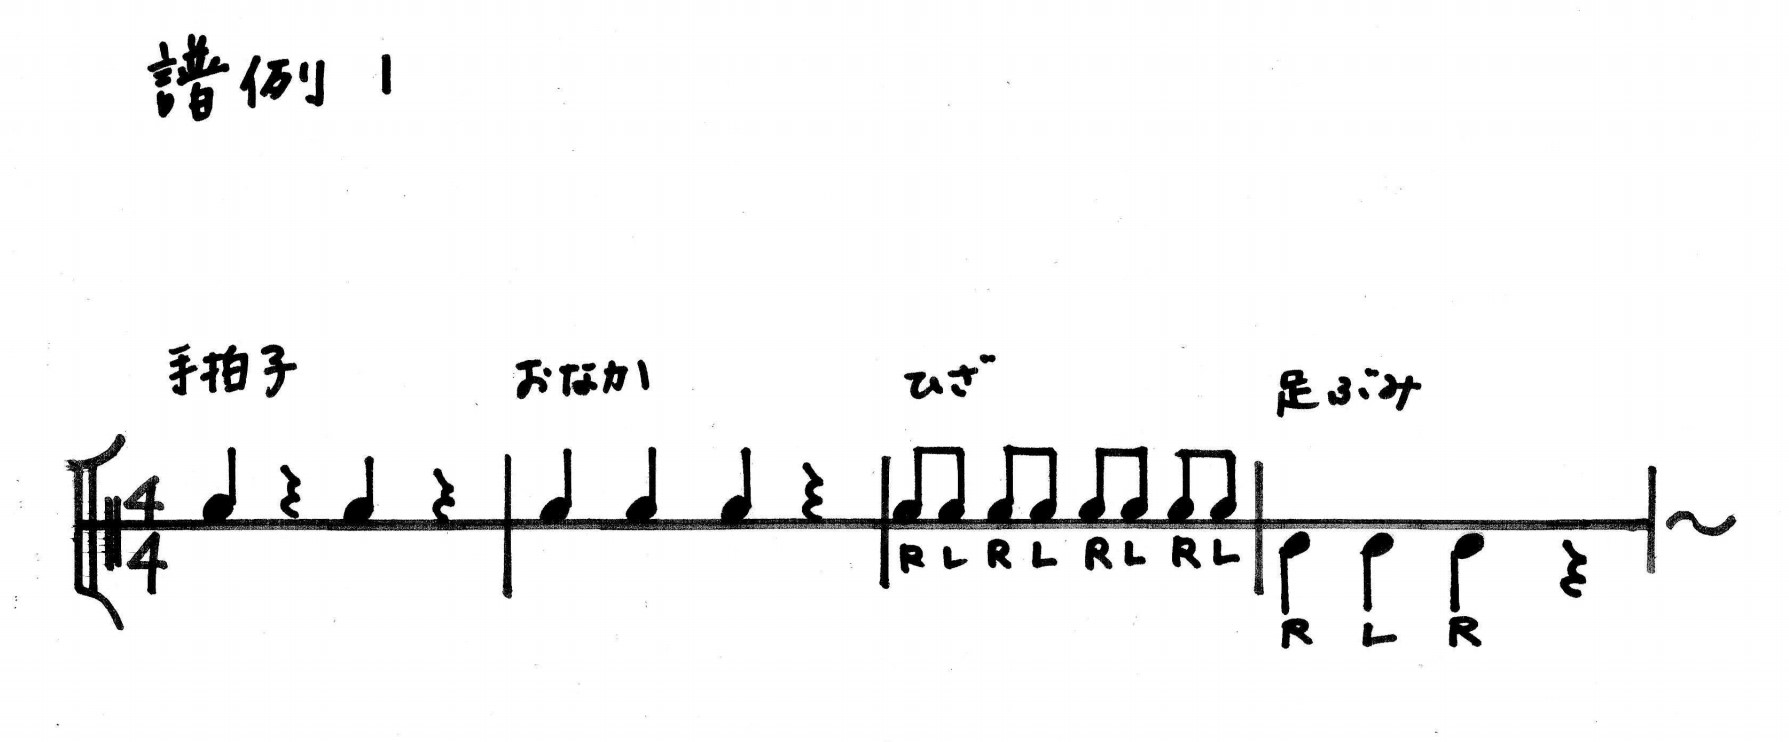 譜例1:ボディパーカッション リズム譜